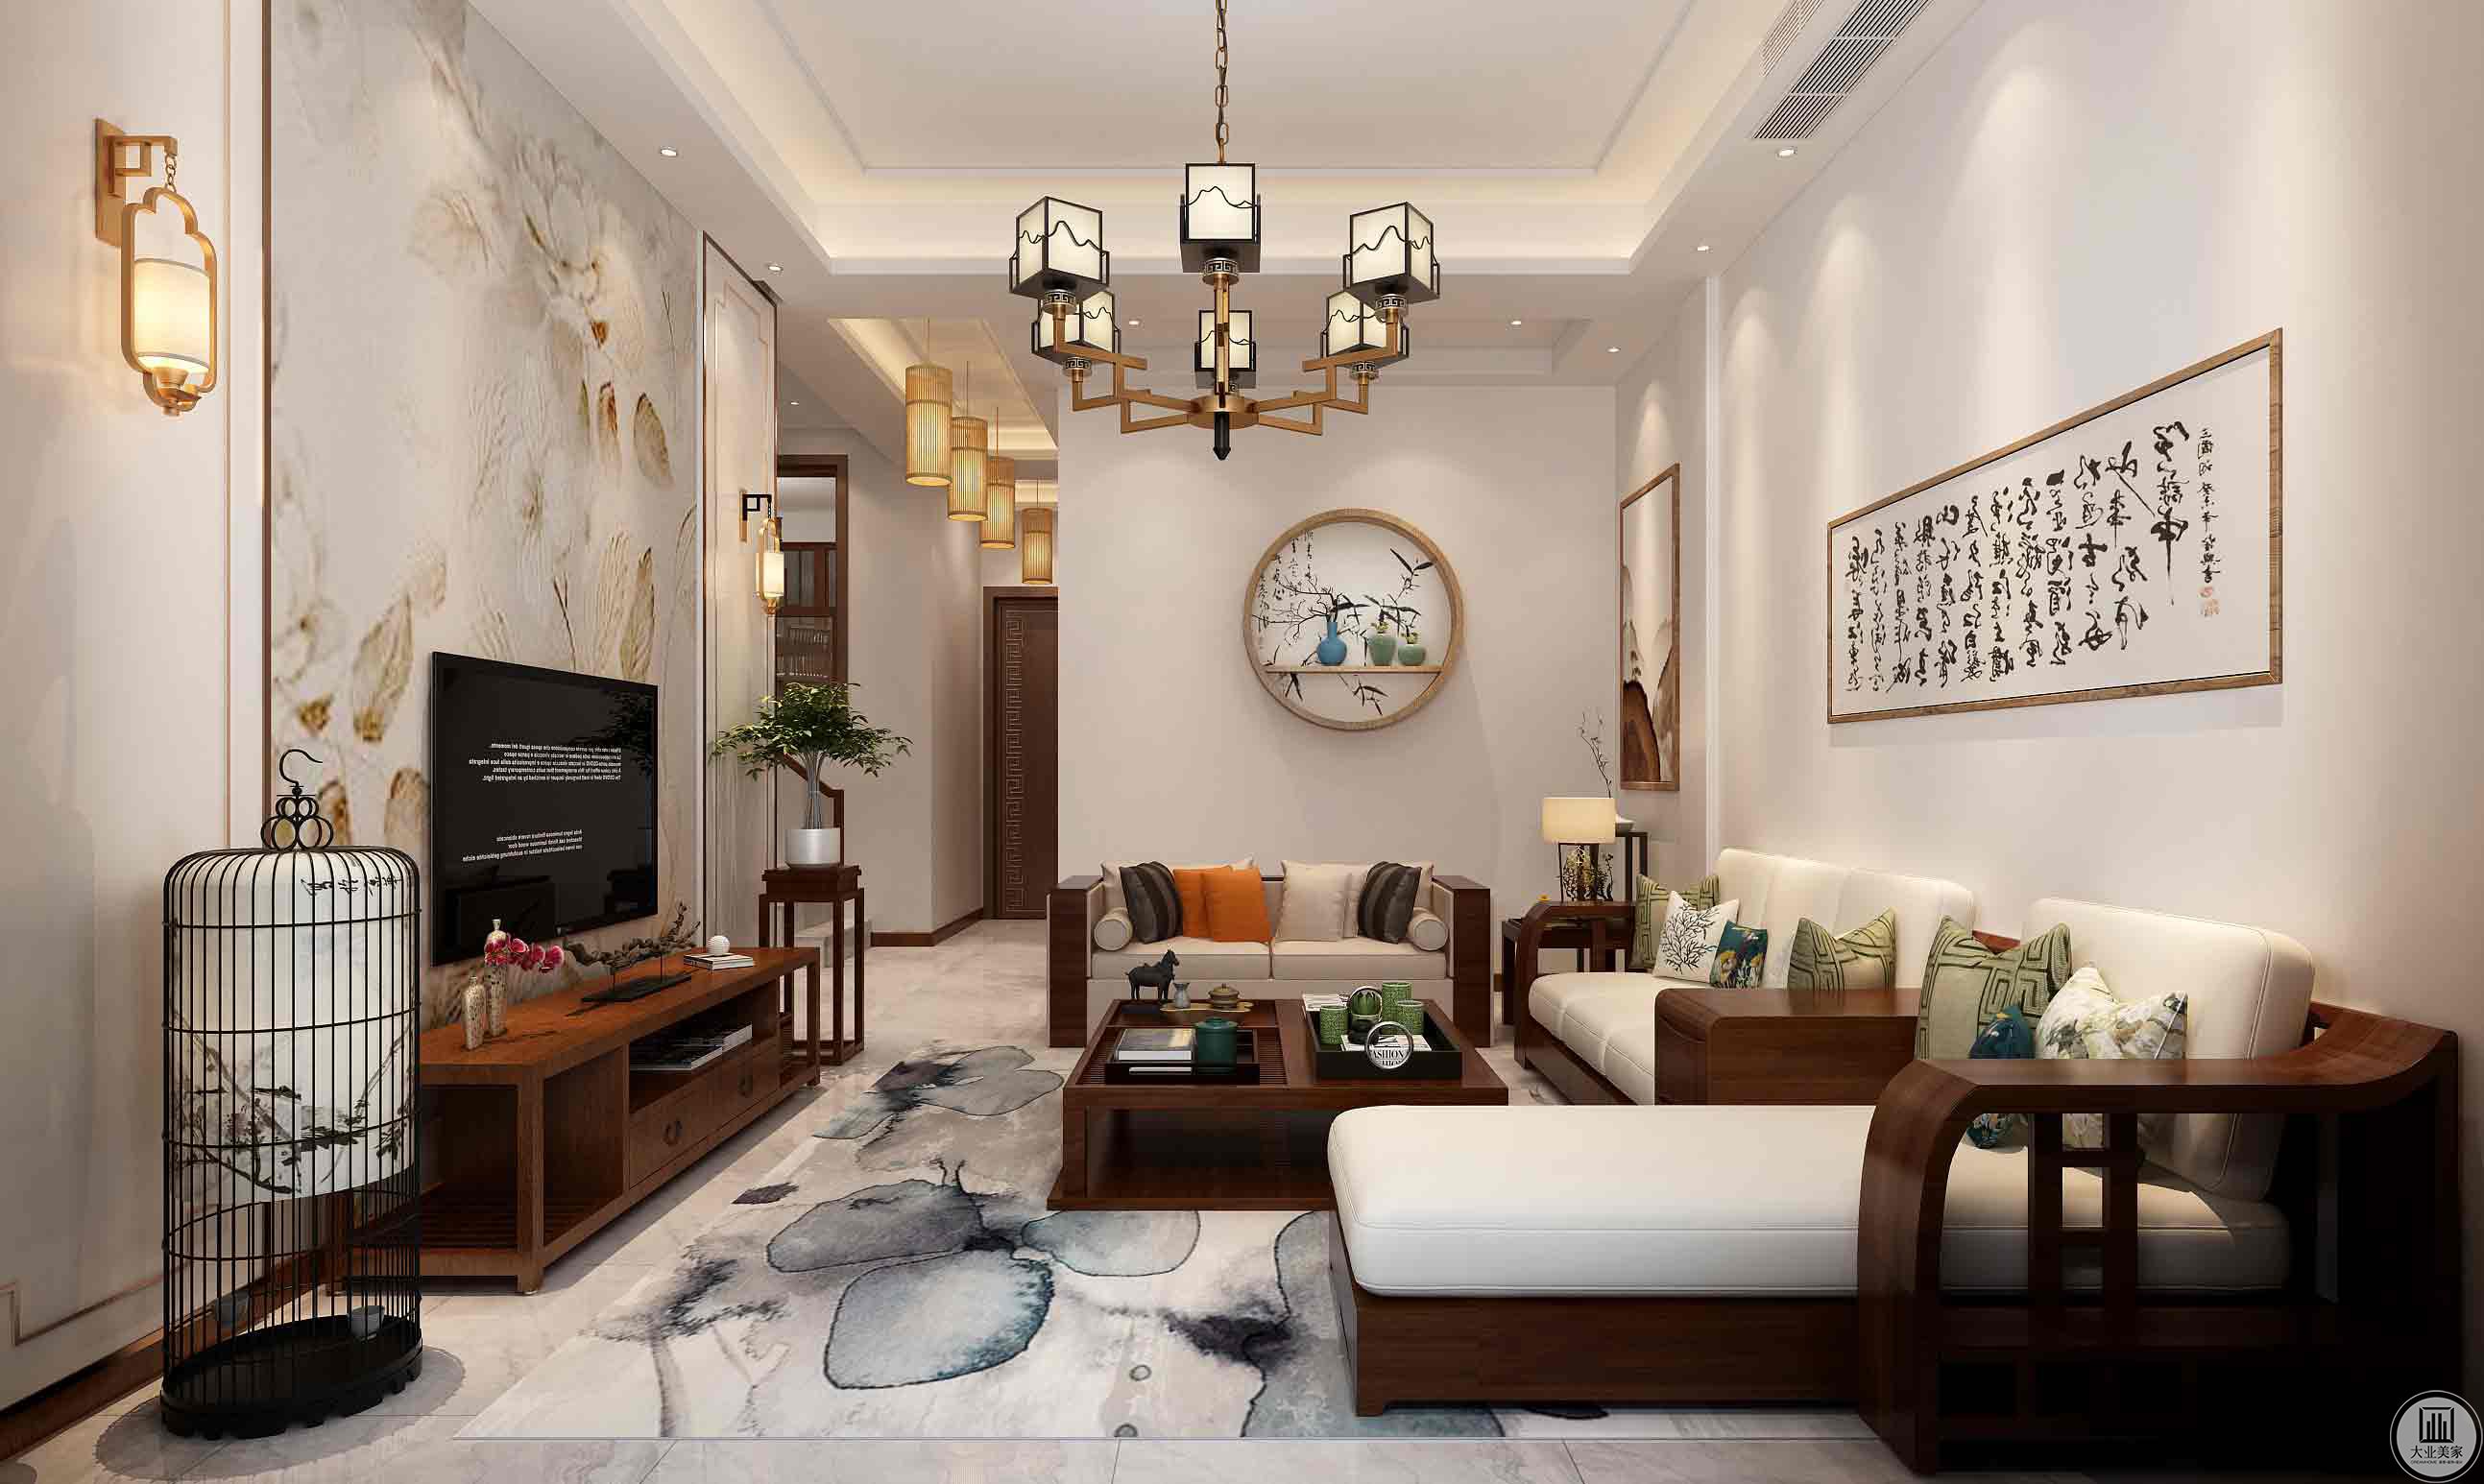 客厅沙发与电视背景分别为主题色白与柚木色，强烈反差拉出空间层次感。